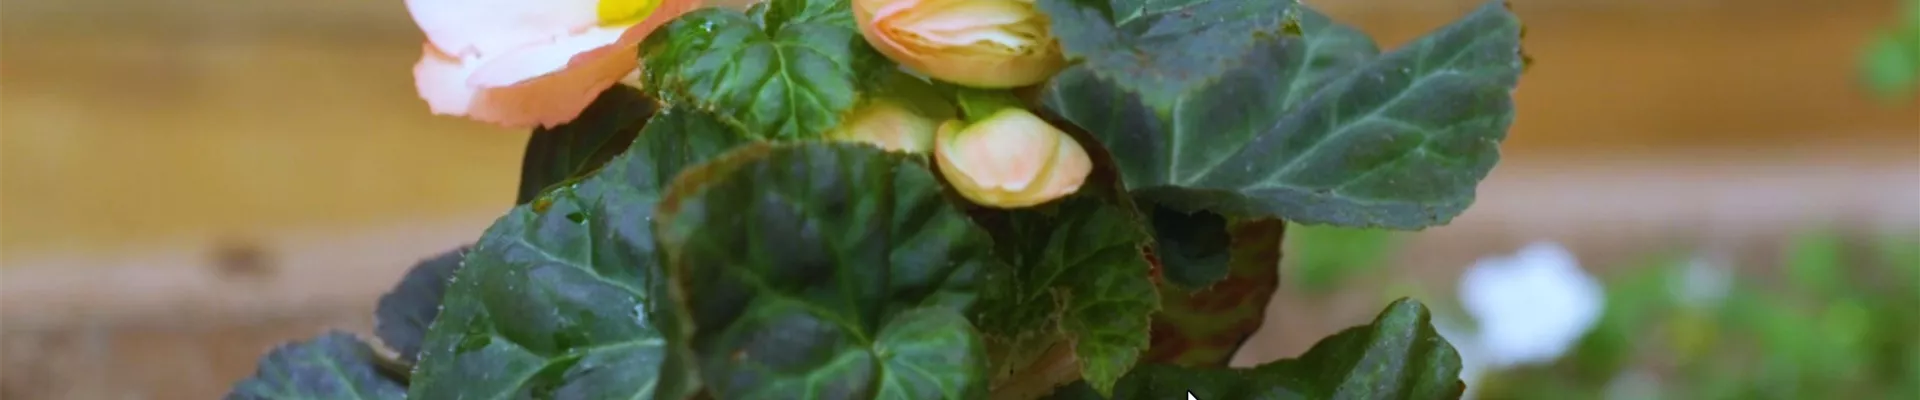 Knollenbegonie - Einpflanzen im Garten (thumbnail).jpg